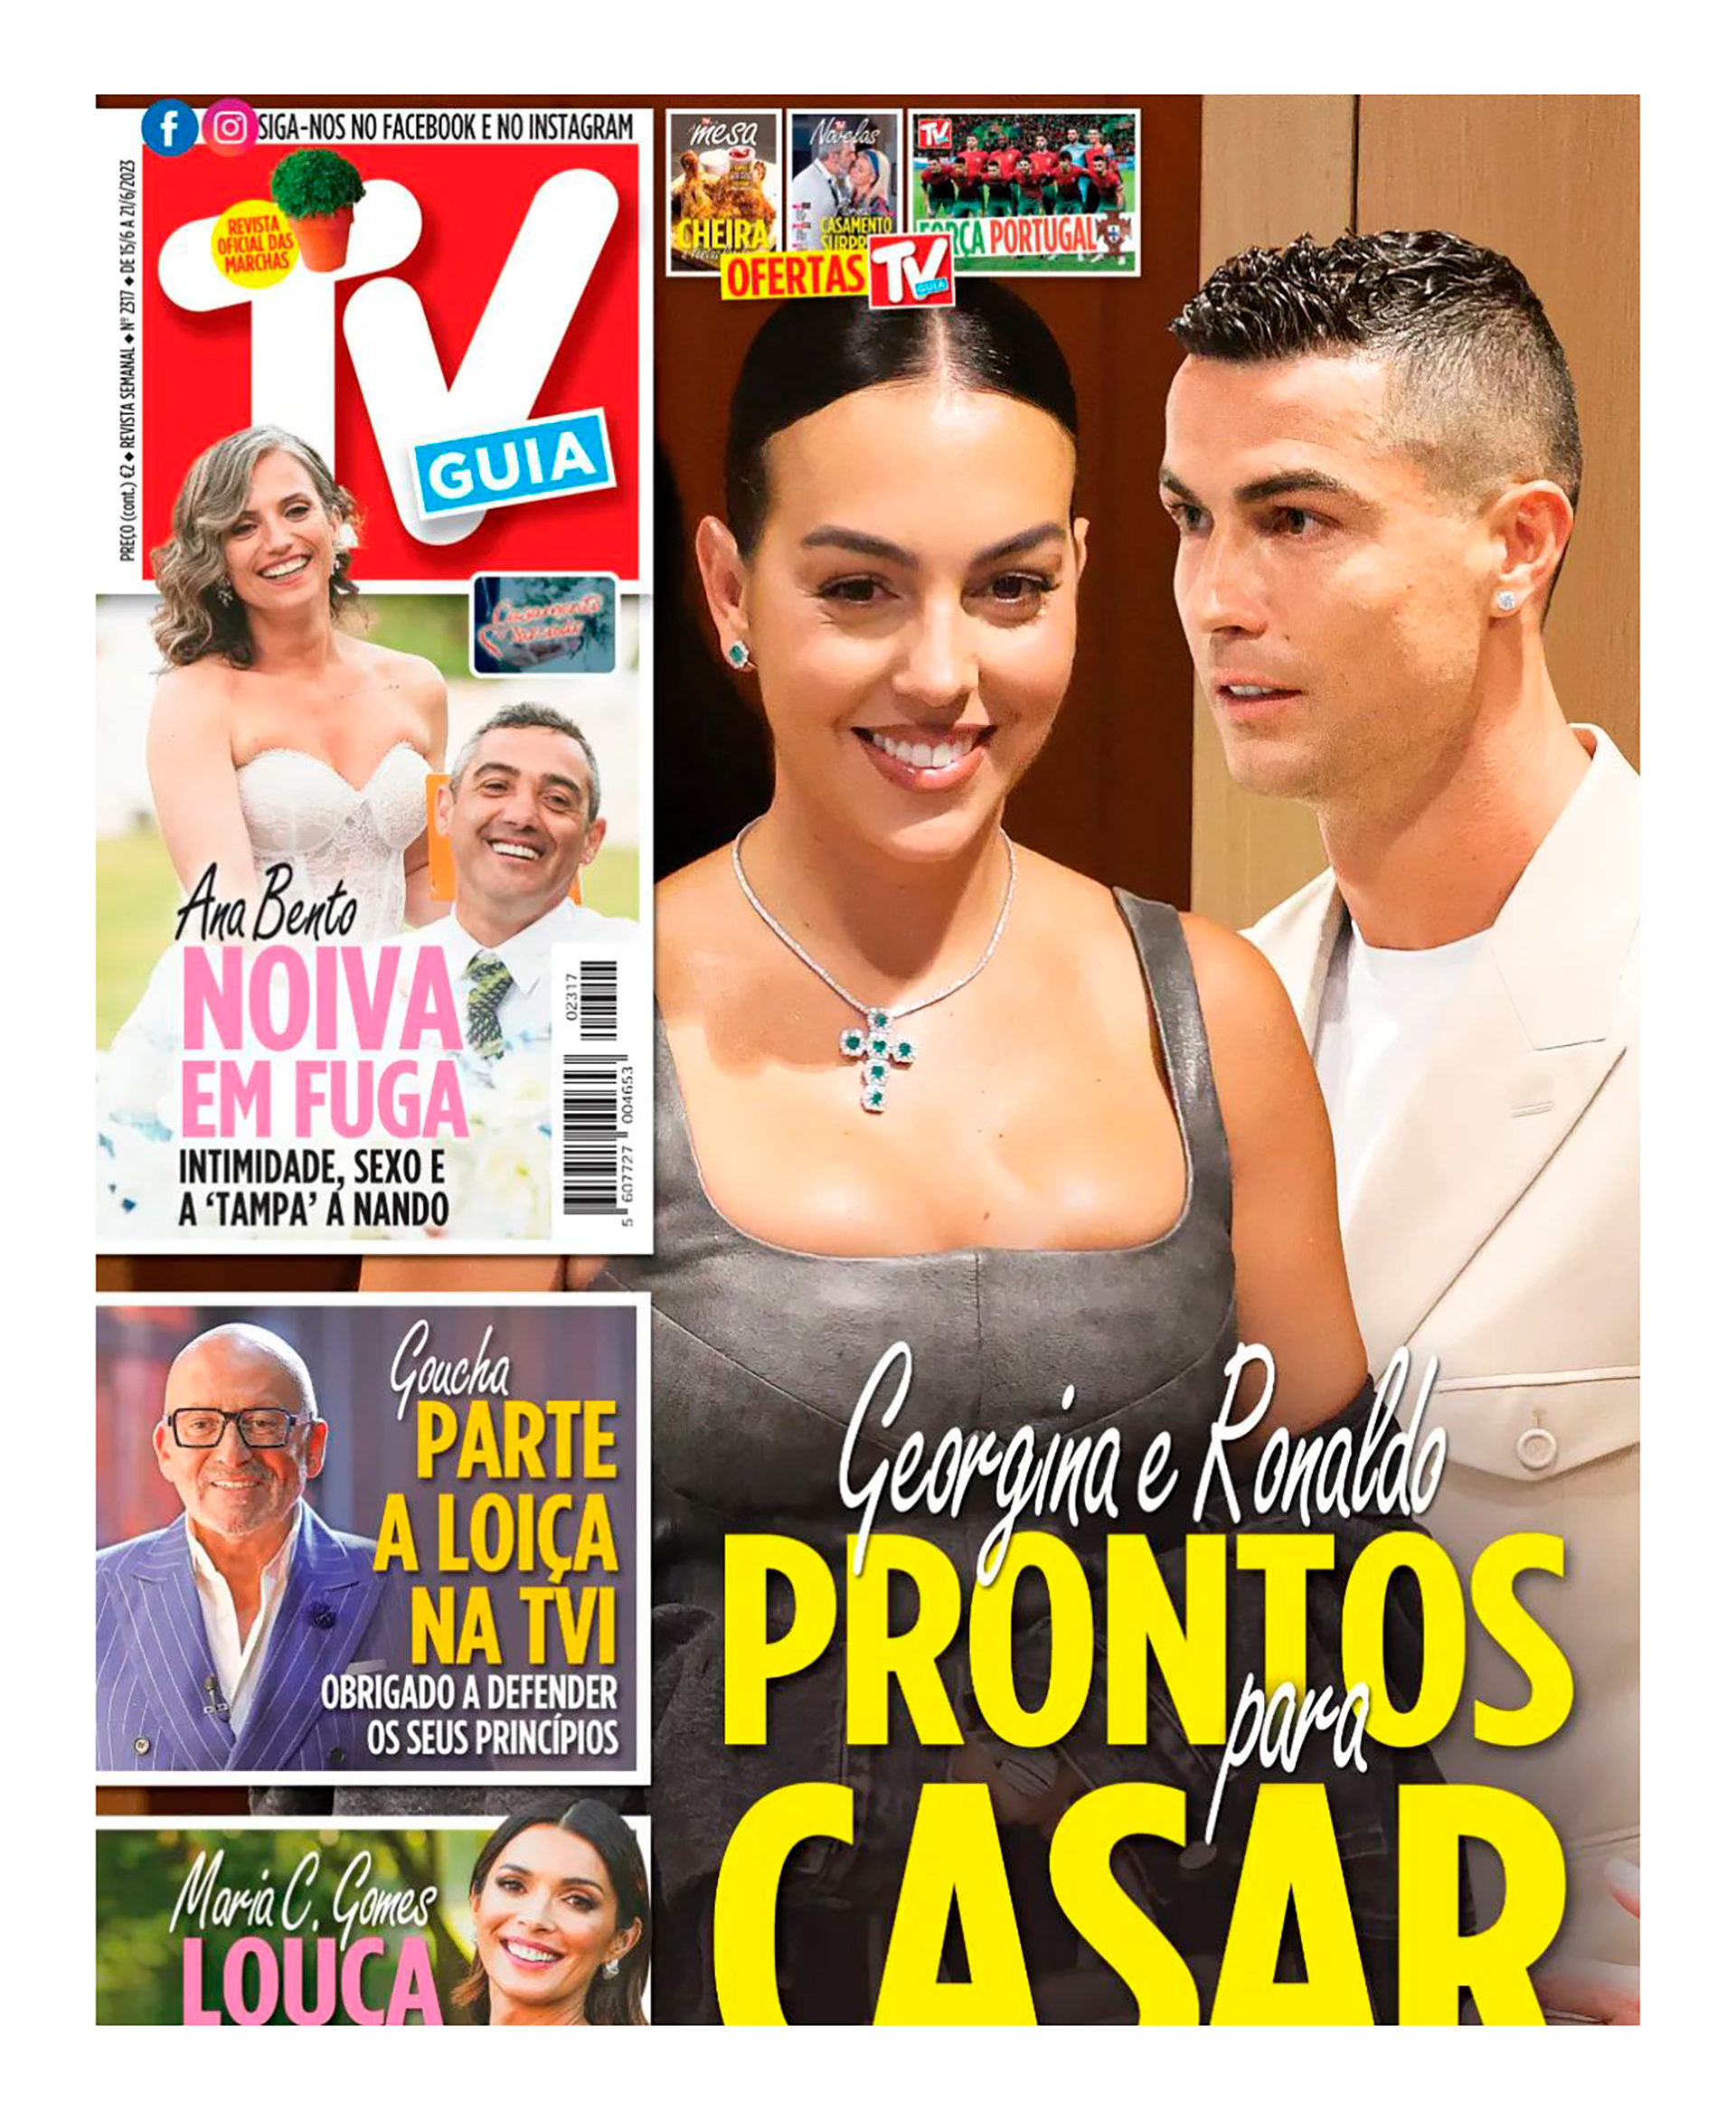 "Listos para casarse", anuncia la misma revista (@tvguiarevista)